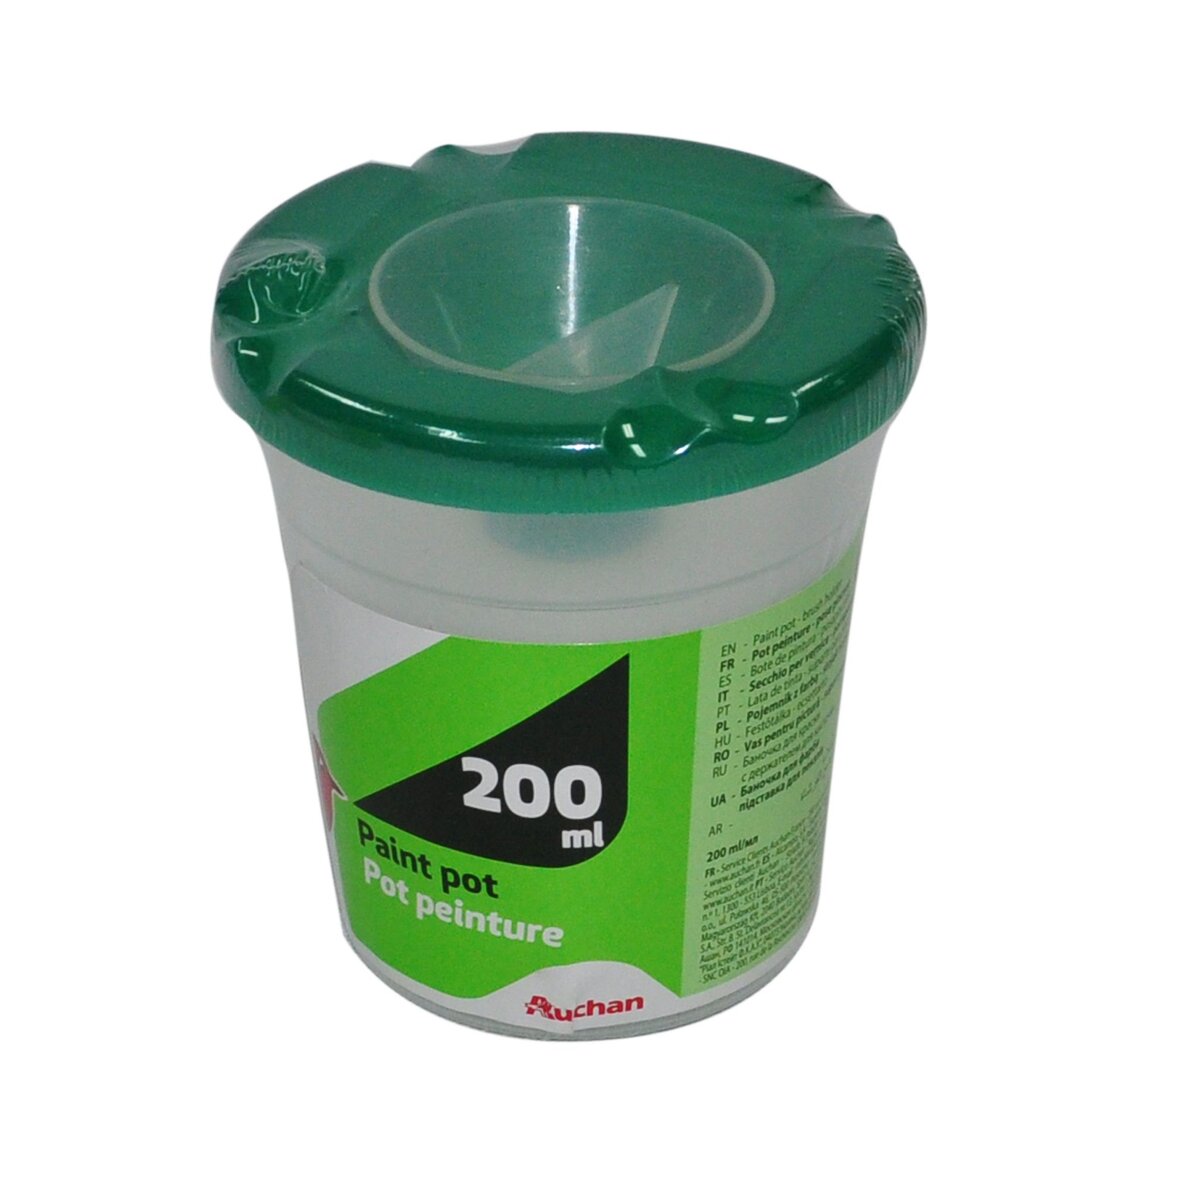 AUCHAN Pot pour peinture 200ml - vert